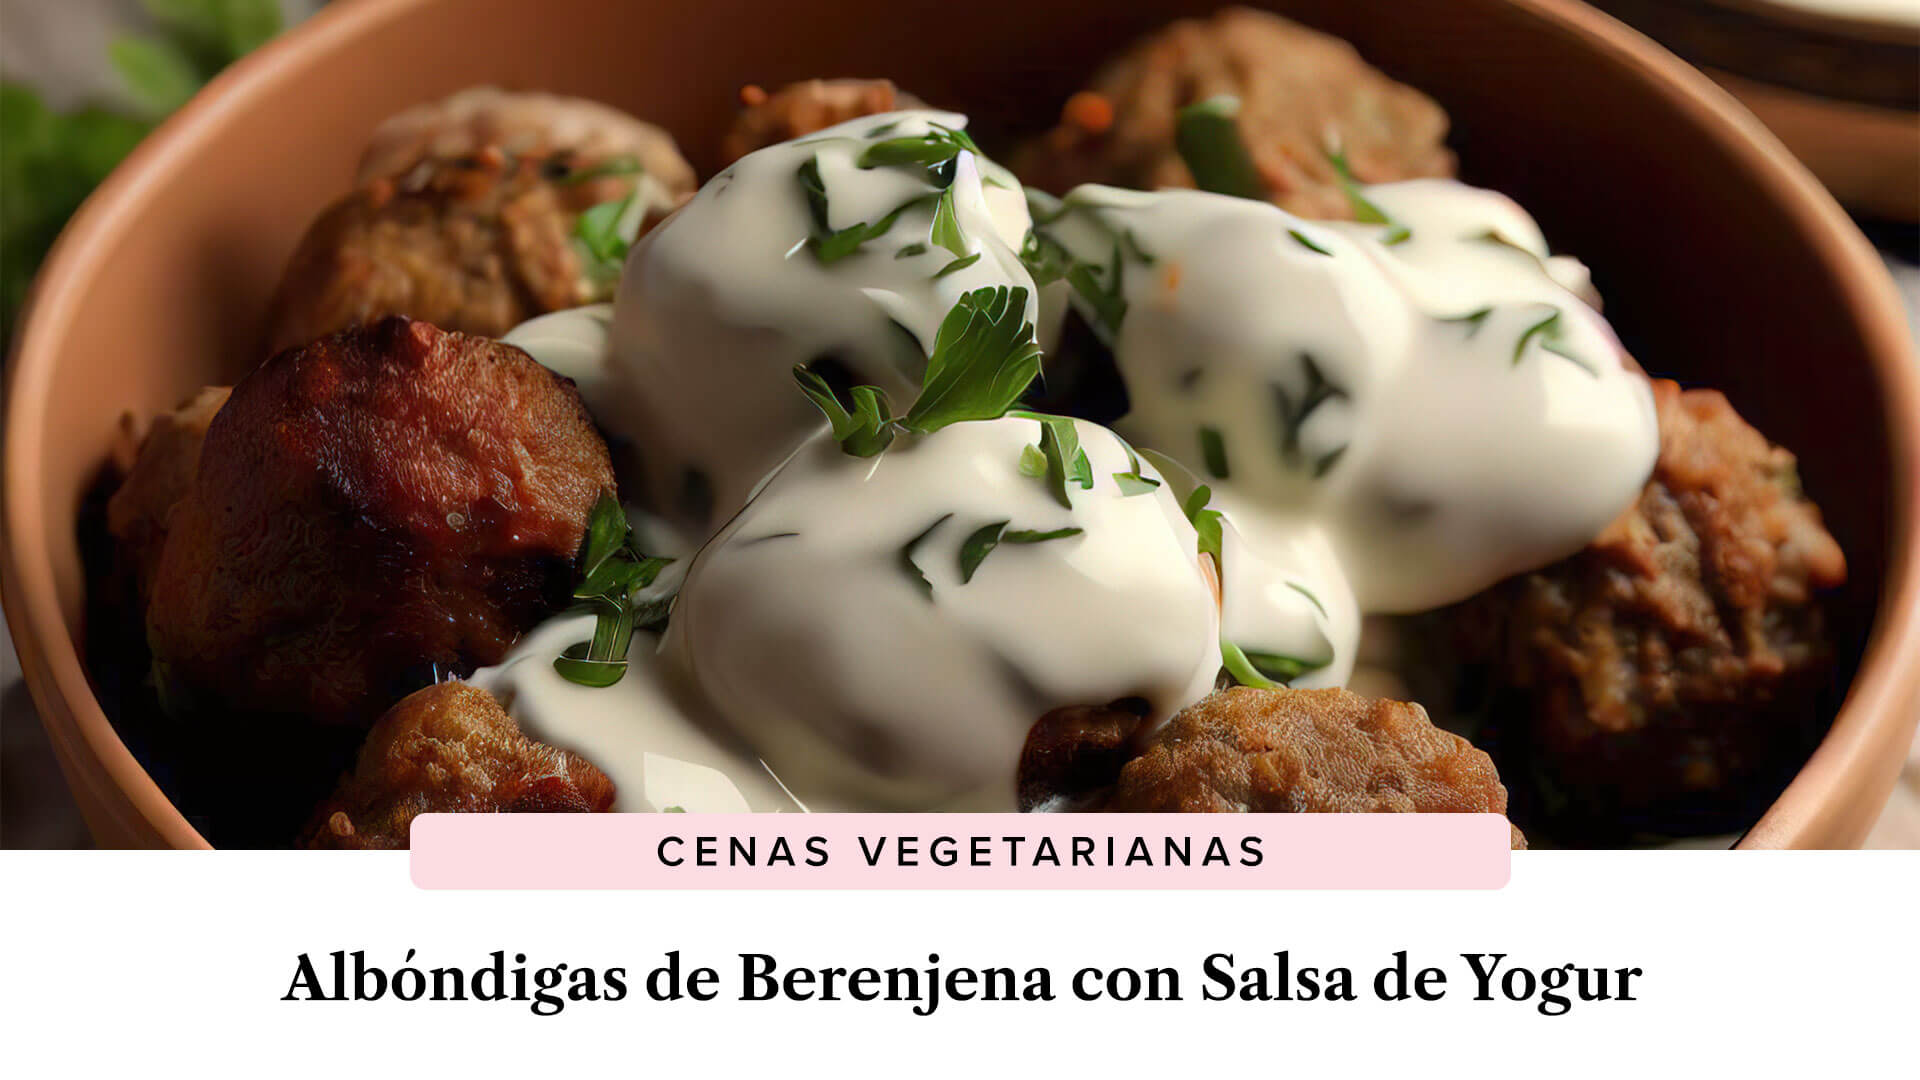 Albóndigas de Berenjena con Salsa de Yogur